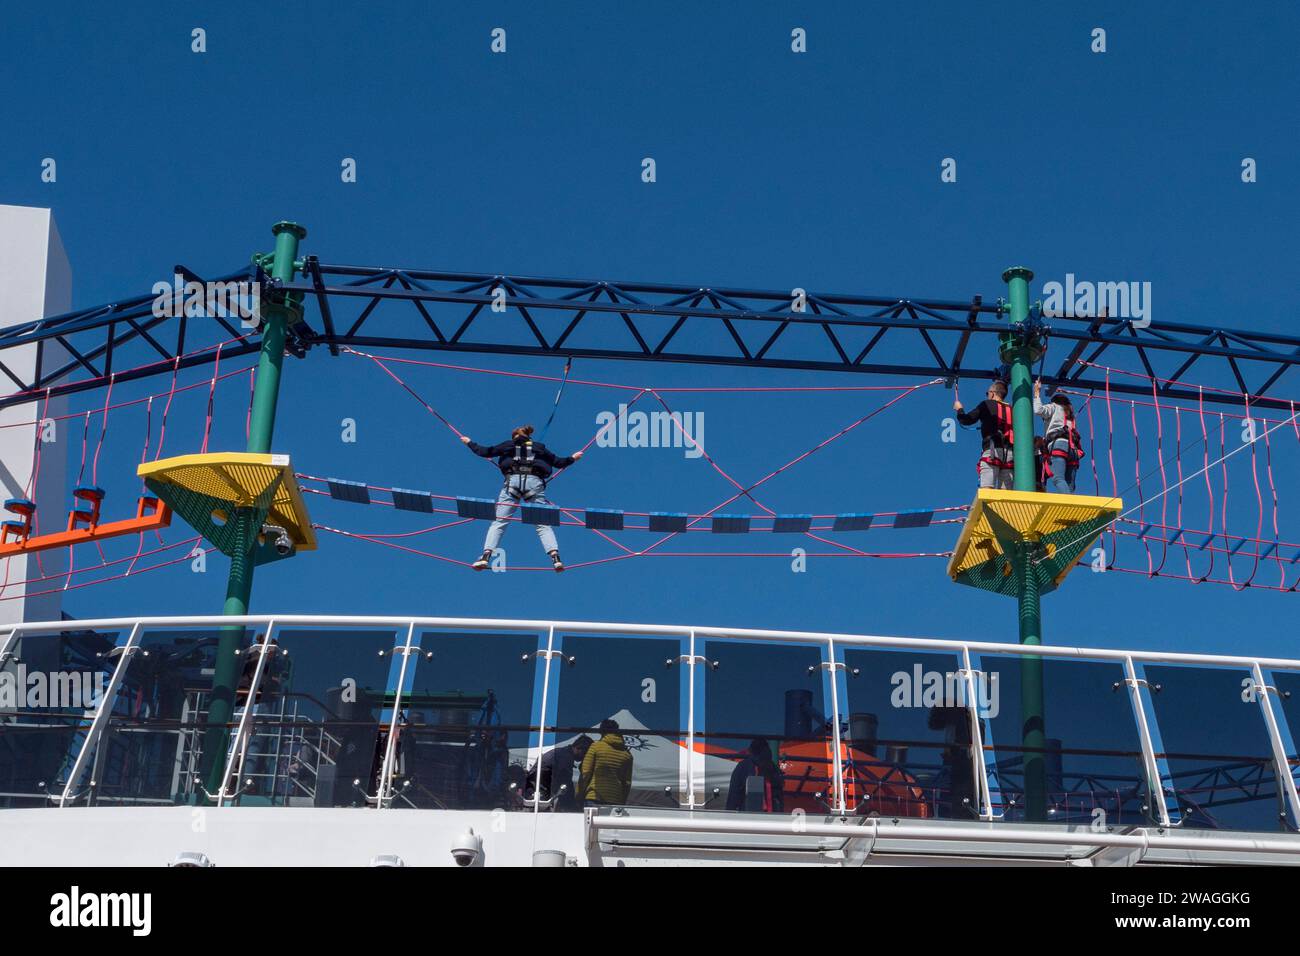 L'activité du pont de l'Himalaya dans l'aire/zone de jeux pour enfants sur le pont Palau sur le MSC Euribia naviguant en Europe du Nord (juillet 23). Banque D'Images